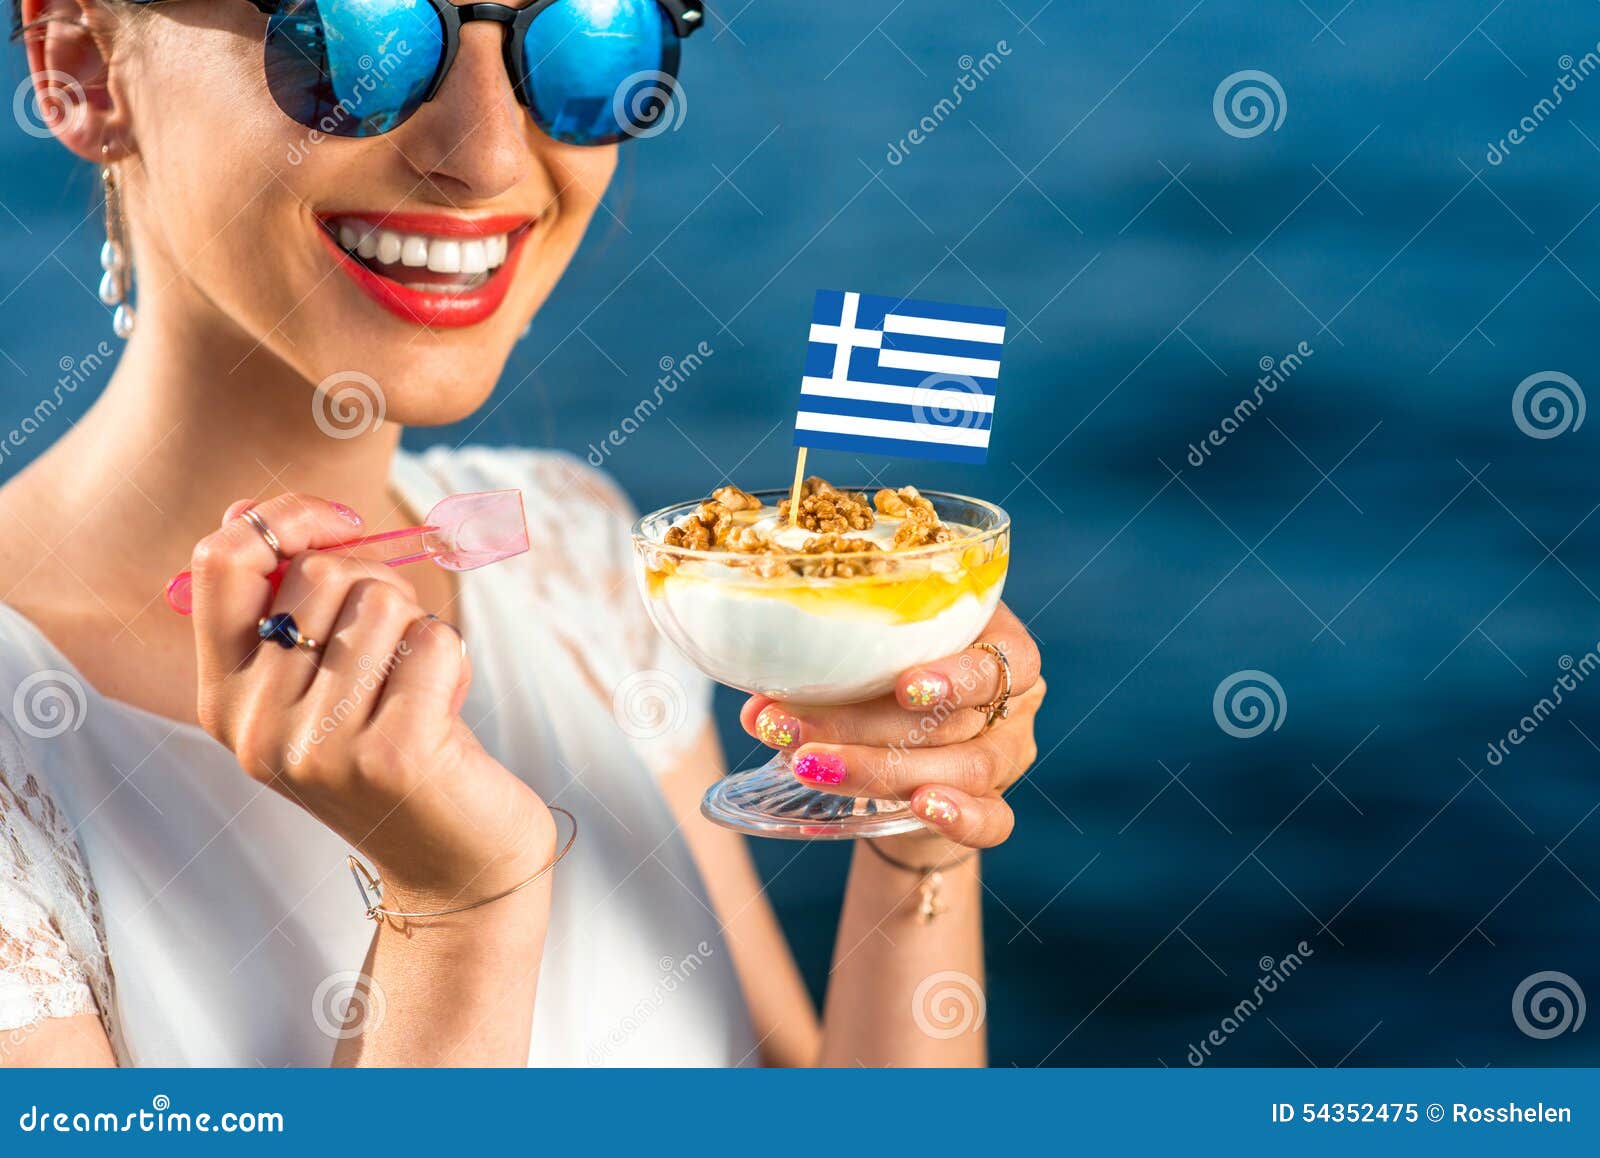 Греческая реклама. Греческие товары. Баннер Греческая кухня. Море йогурта. Греческие девушки с едой фото.